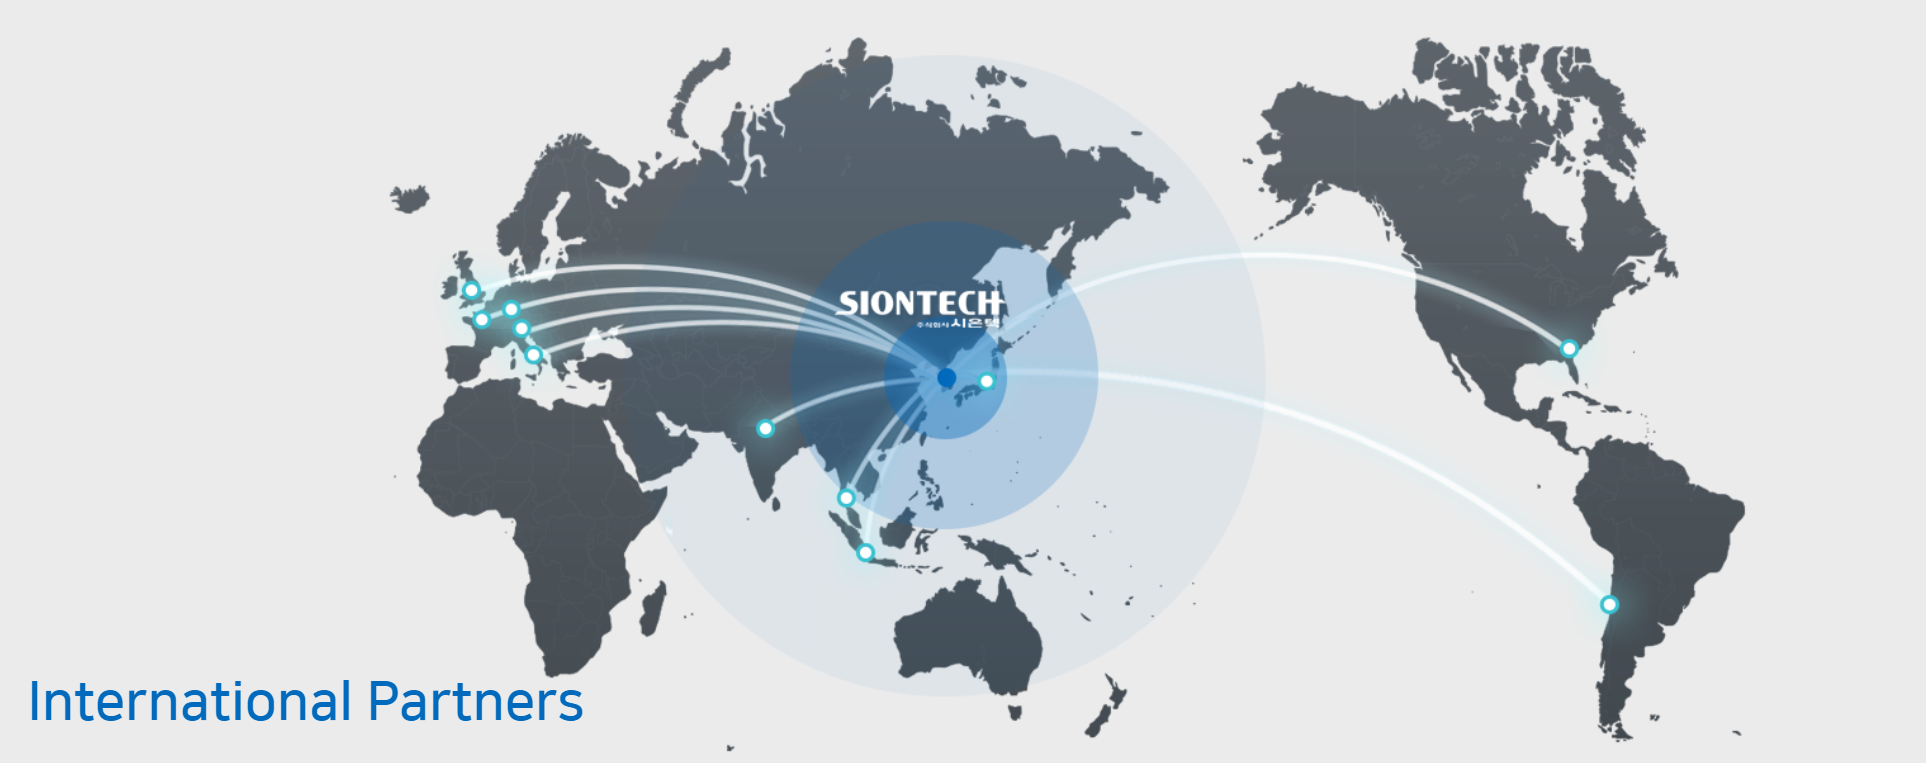 Mạng lưới phân bố và khách hàng của Siontech